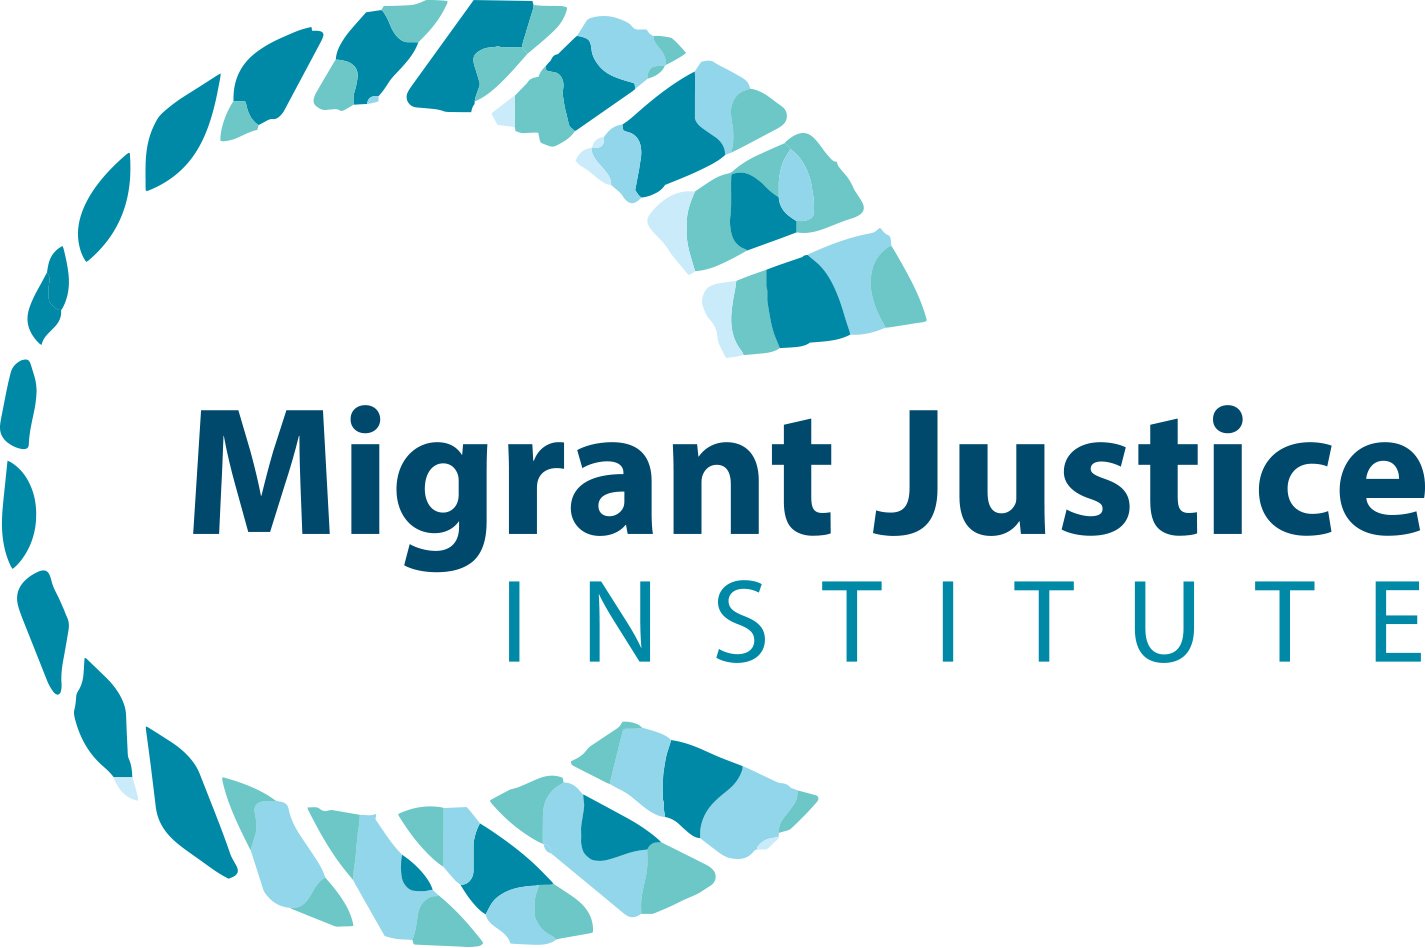 Migrant Justice Institute